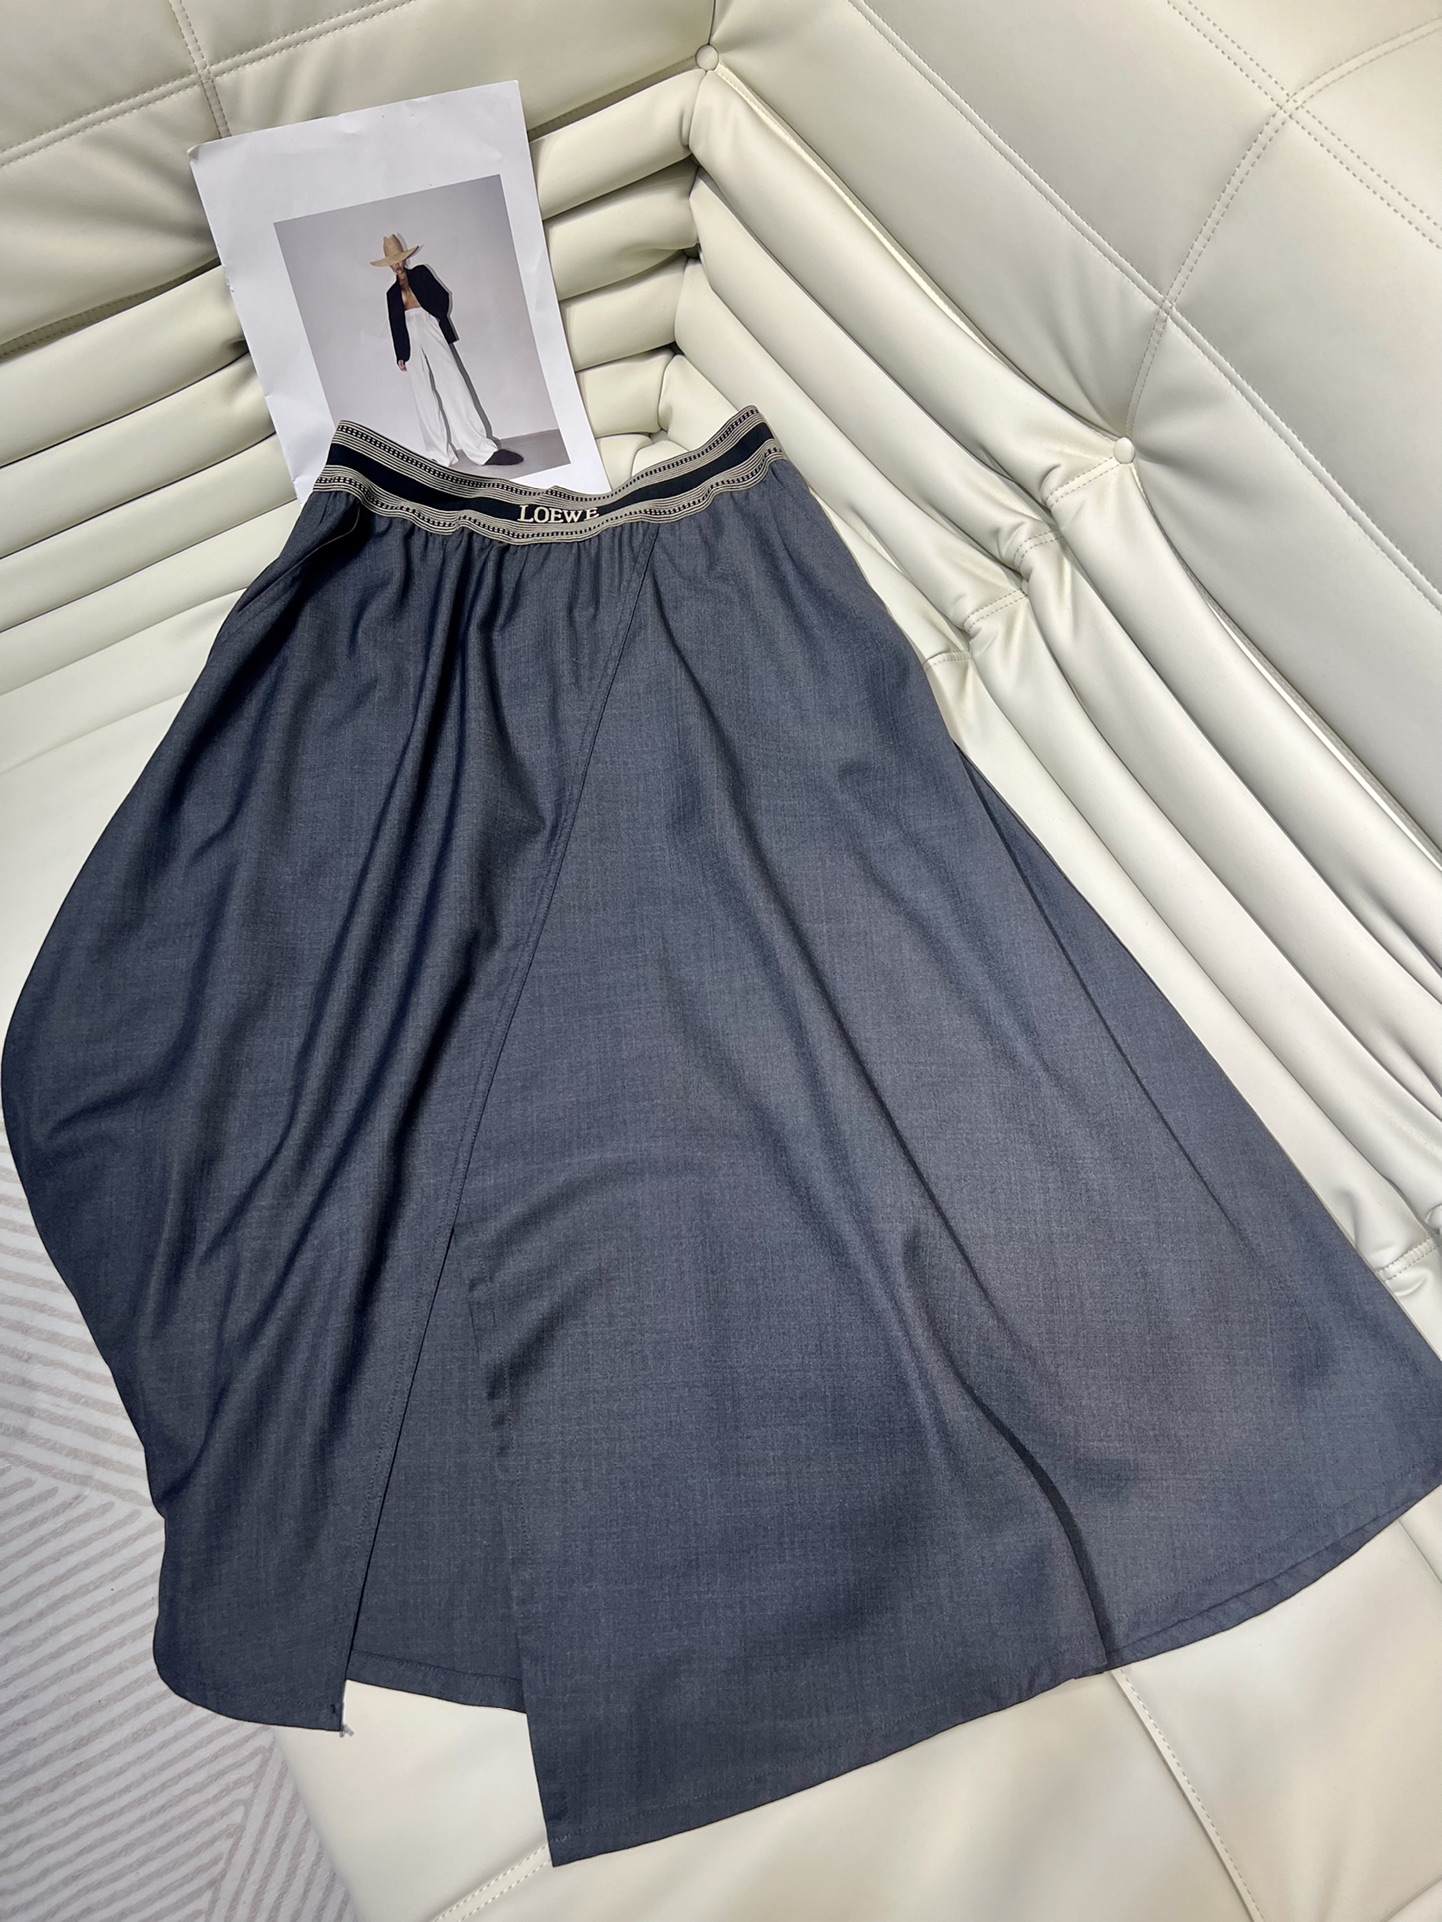 罗意威织带不规则半裙 很显腿长 面料柔软细腻 织带logo气质时髦款 高品质 尺码SML4lbewezdjs